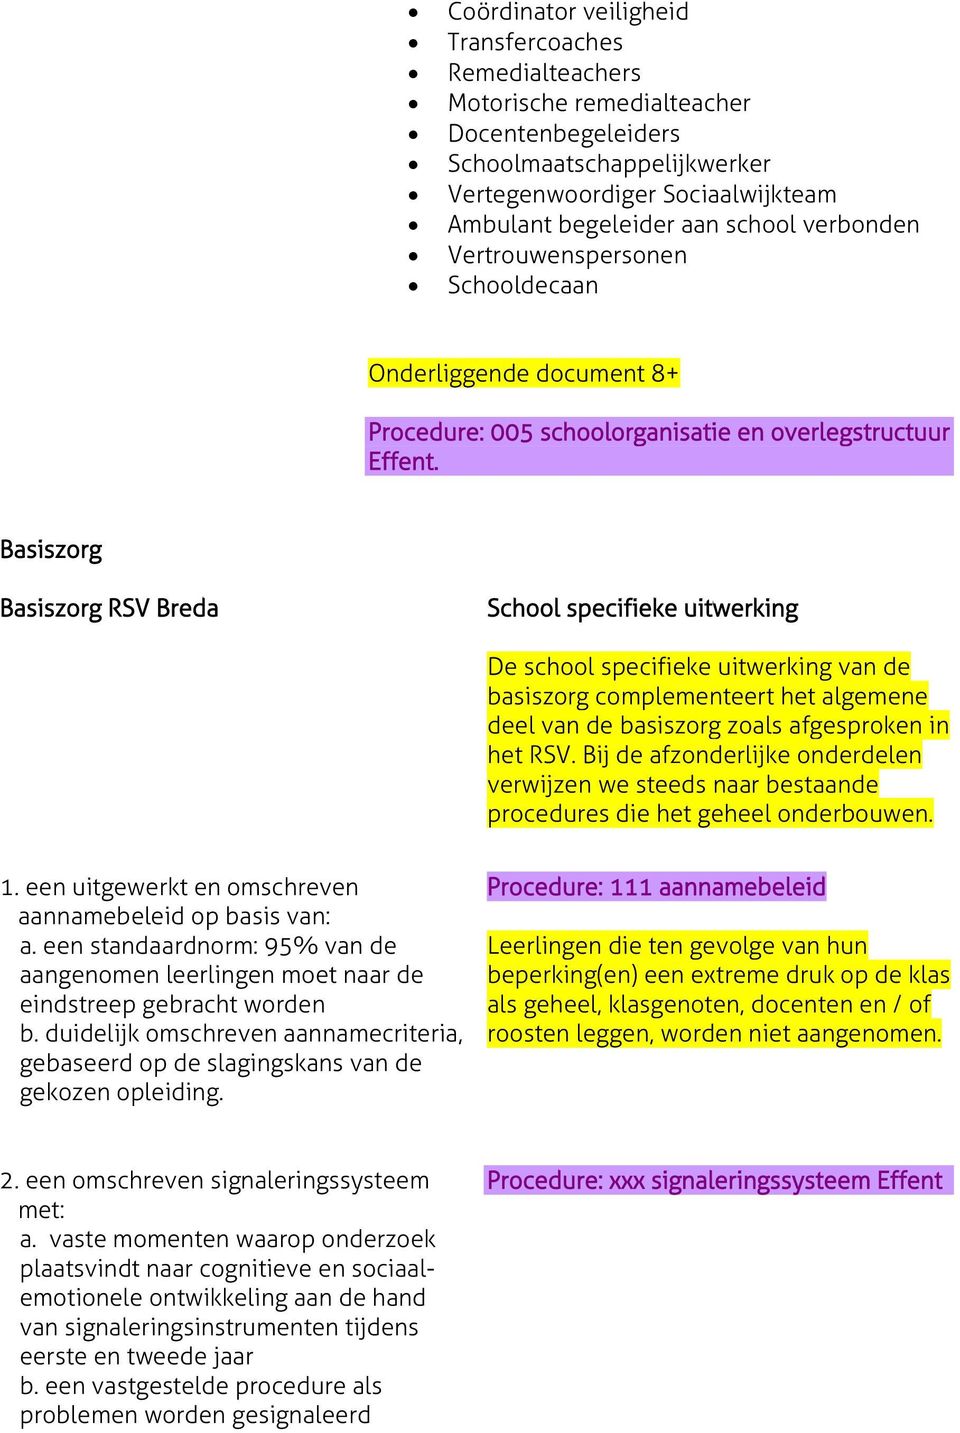 Basiszorg Basiszorg RSV Breda School specifieke uitwerking De school specifieke uitwerking van de basiszorg complementeert het algemene deel van de basiszorg zoals afgesproken in het RSV.